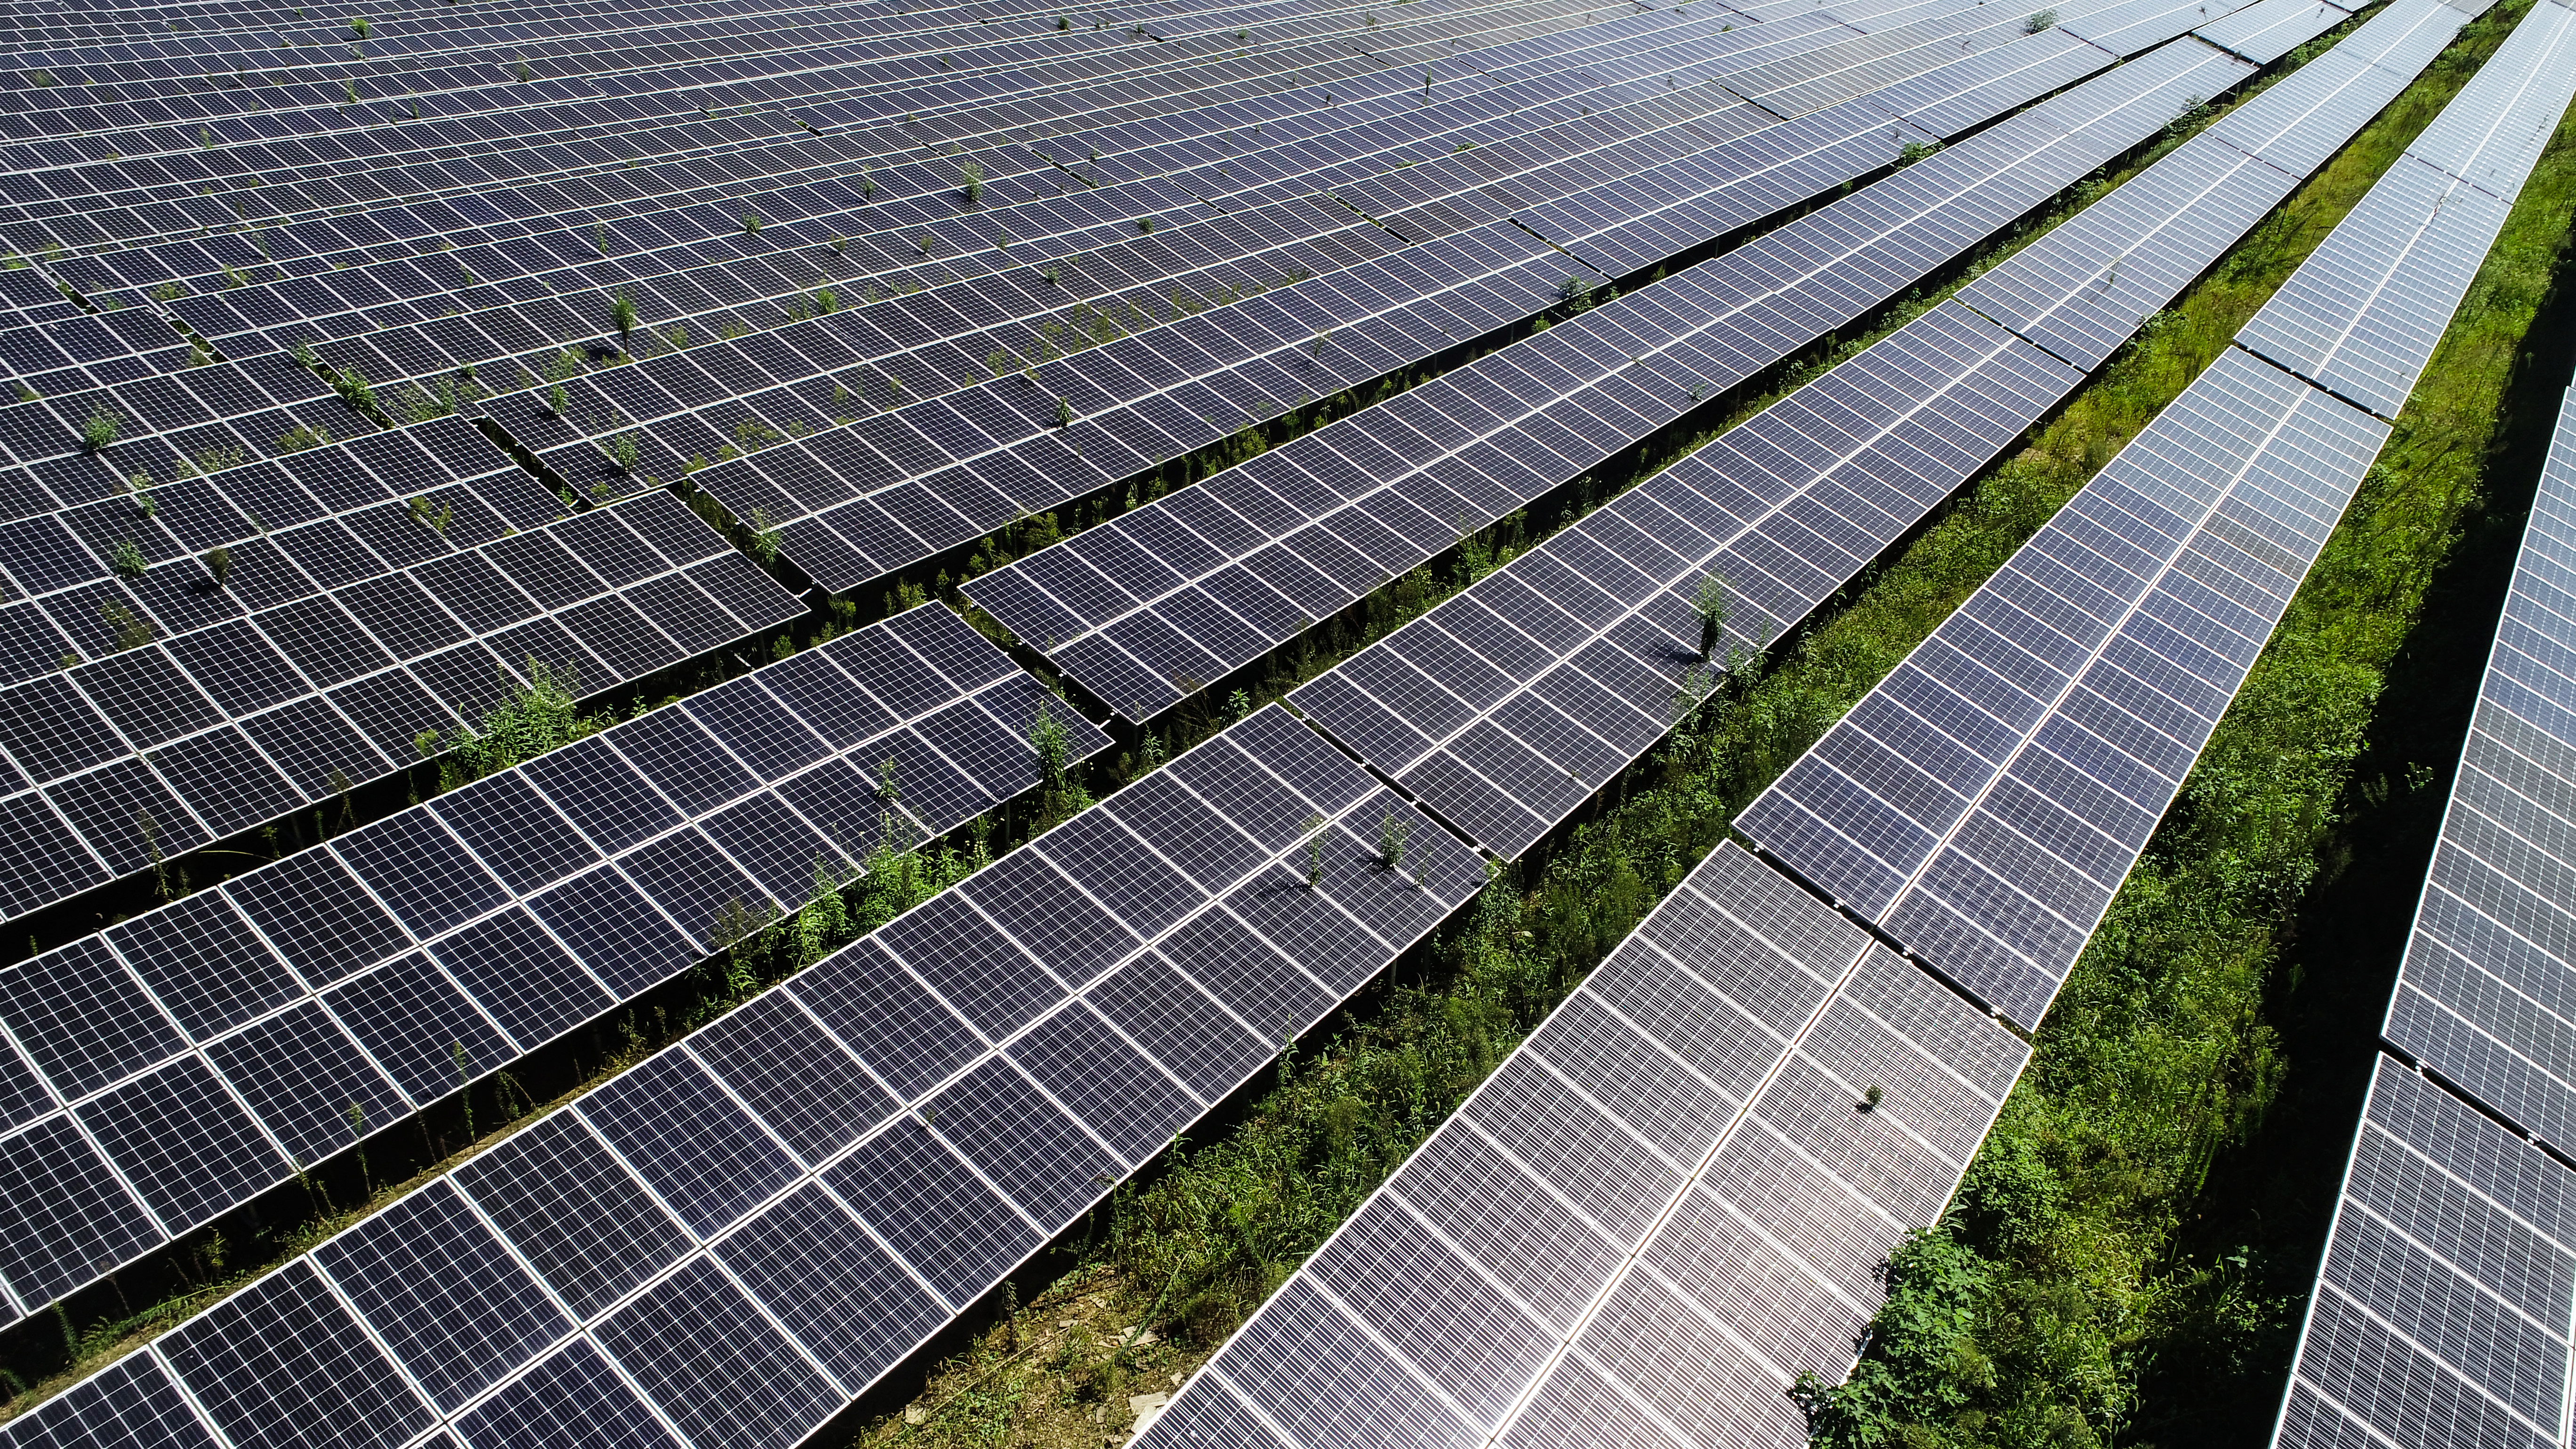 Fotovoltaïske produkten binne in nij groeipunt wurden foar eksport